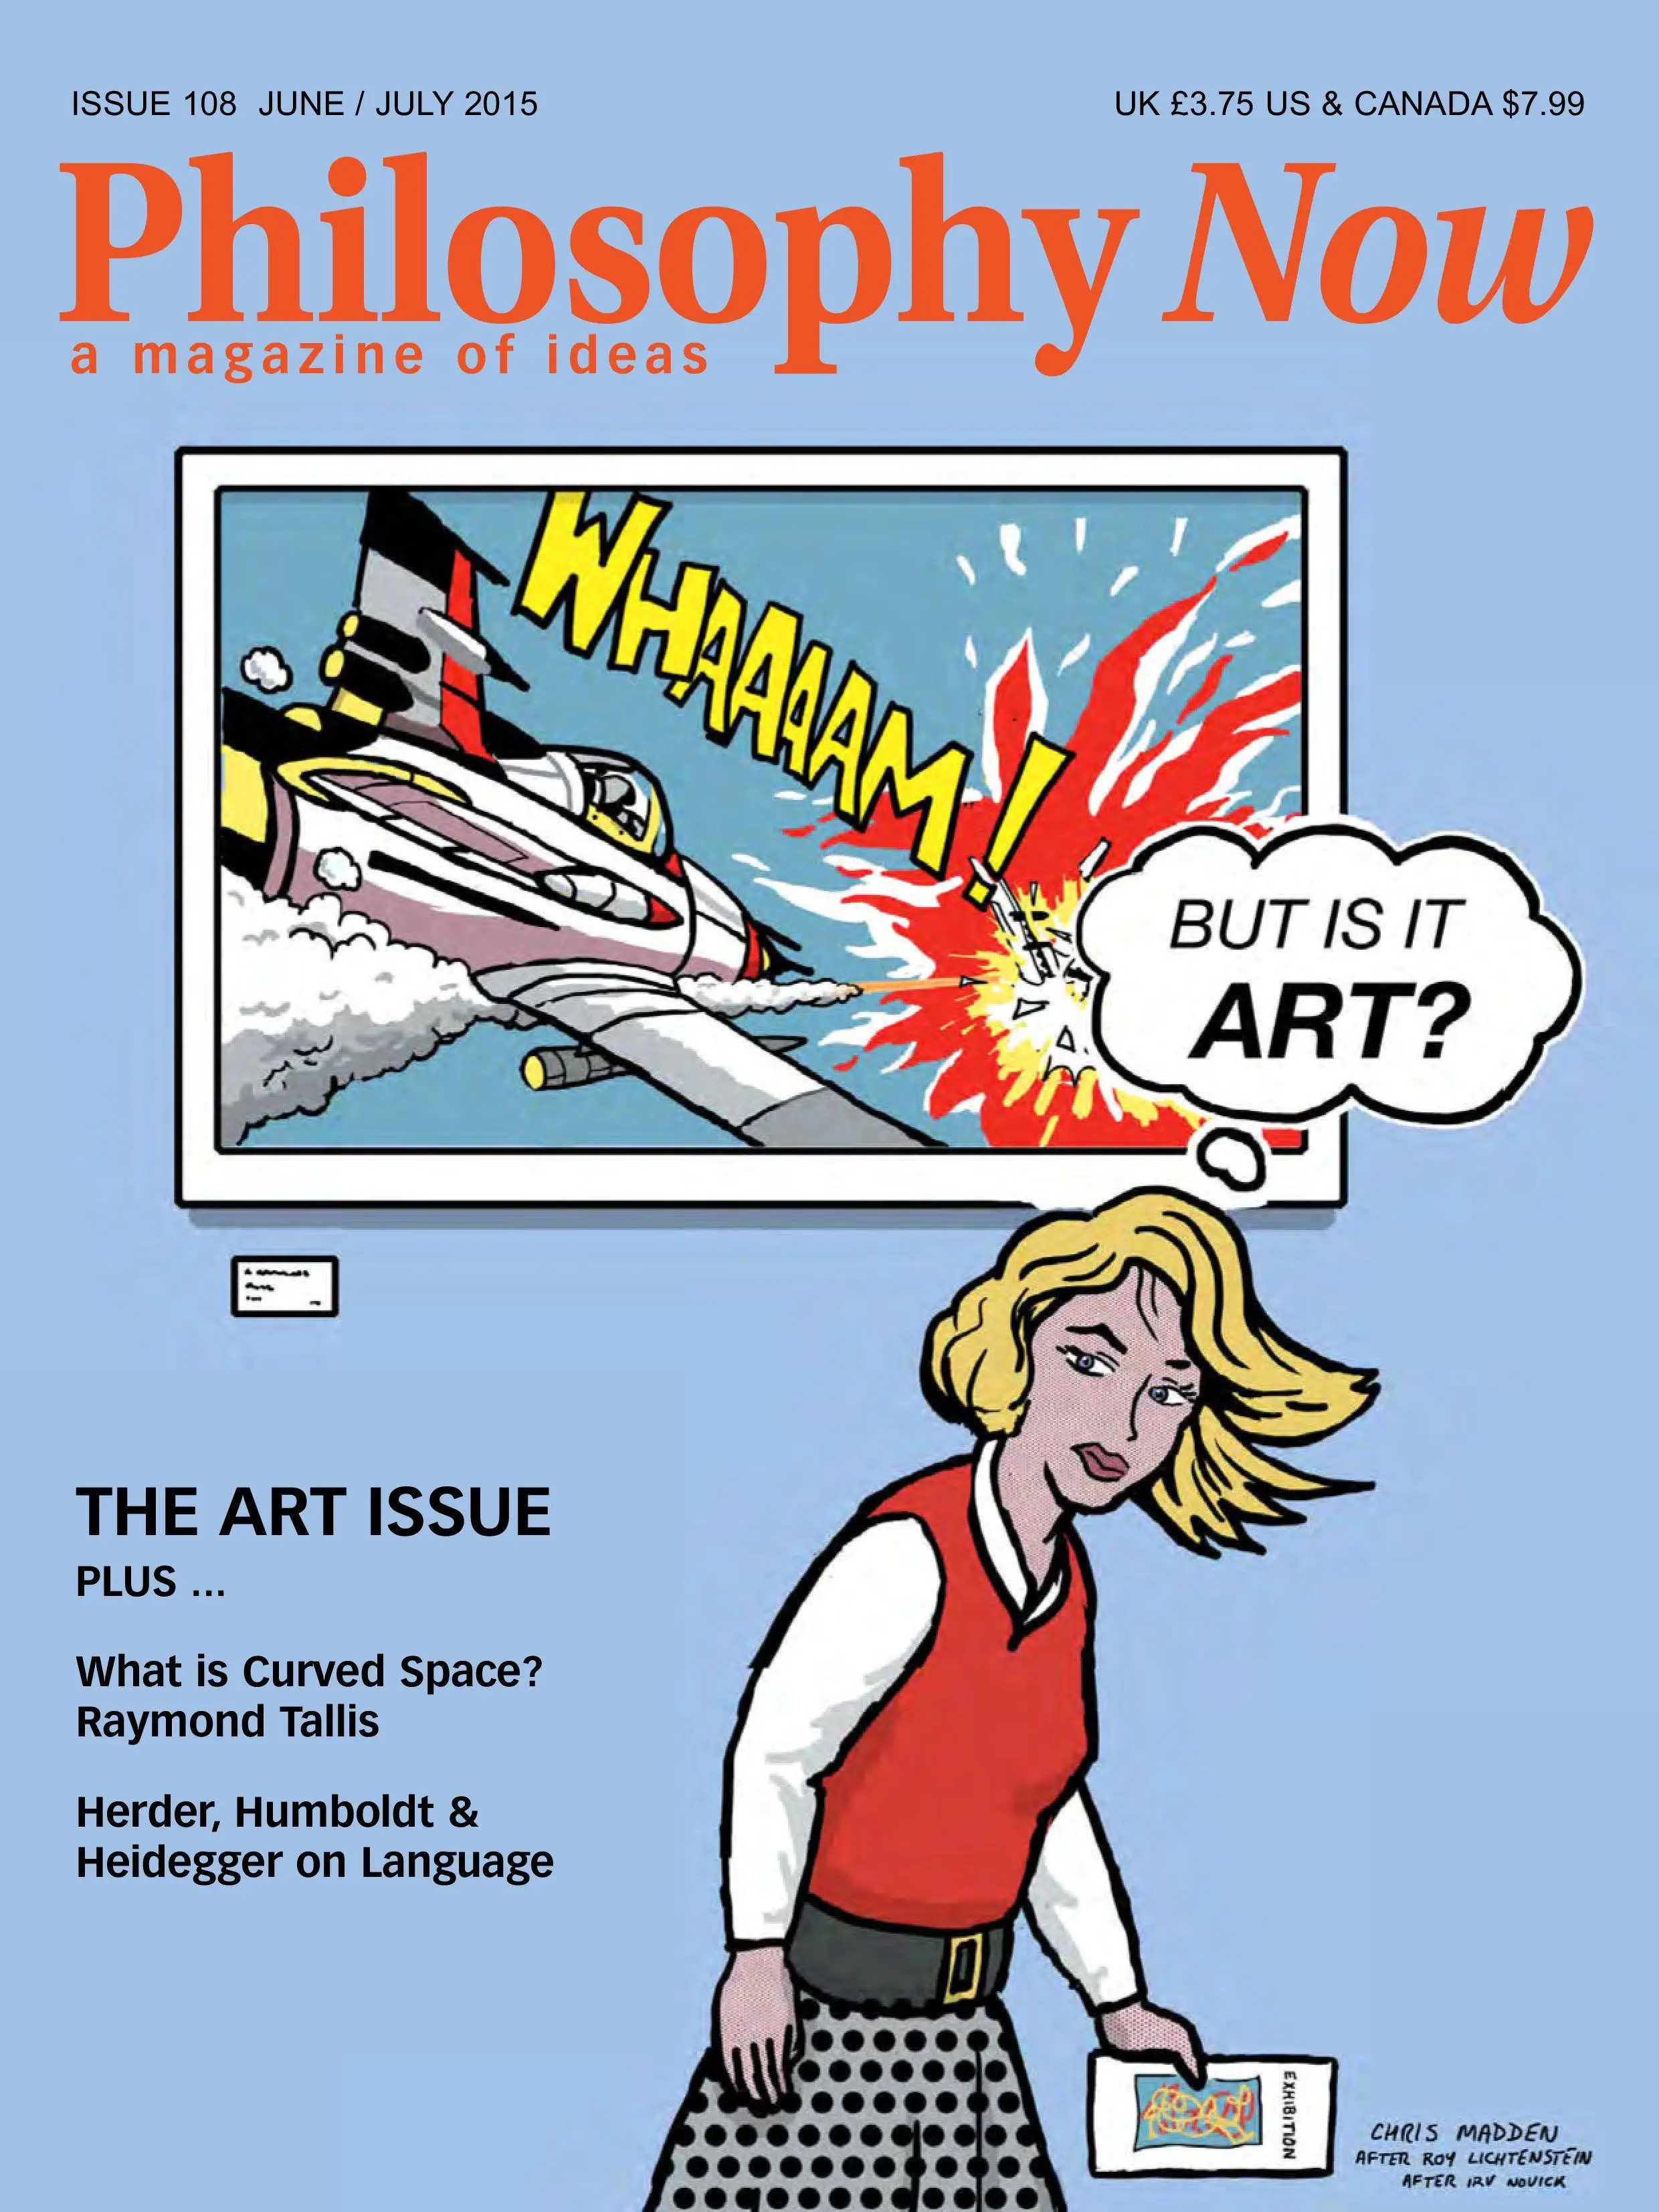 Now magazine. Журнал Philosophy Now. Philosophy and Now. Philosophical readings журнал. The New Philosophy журнал.